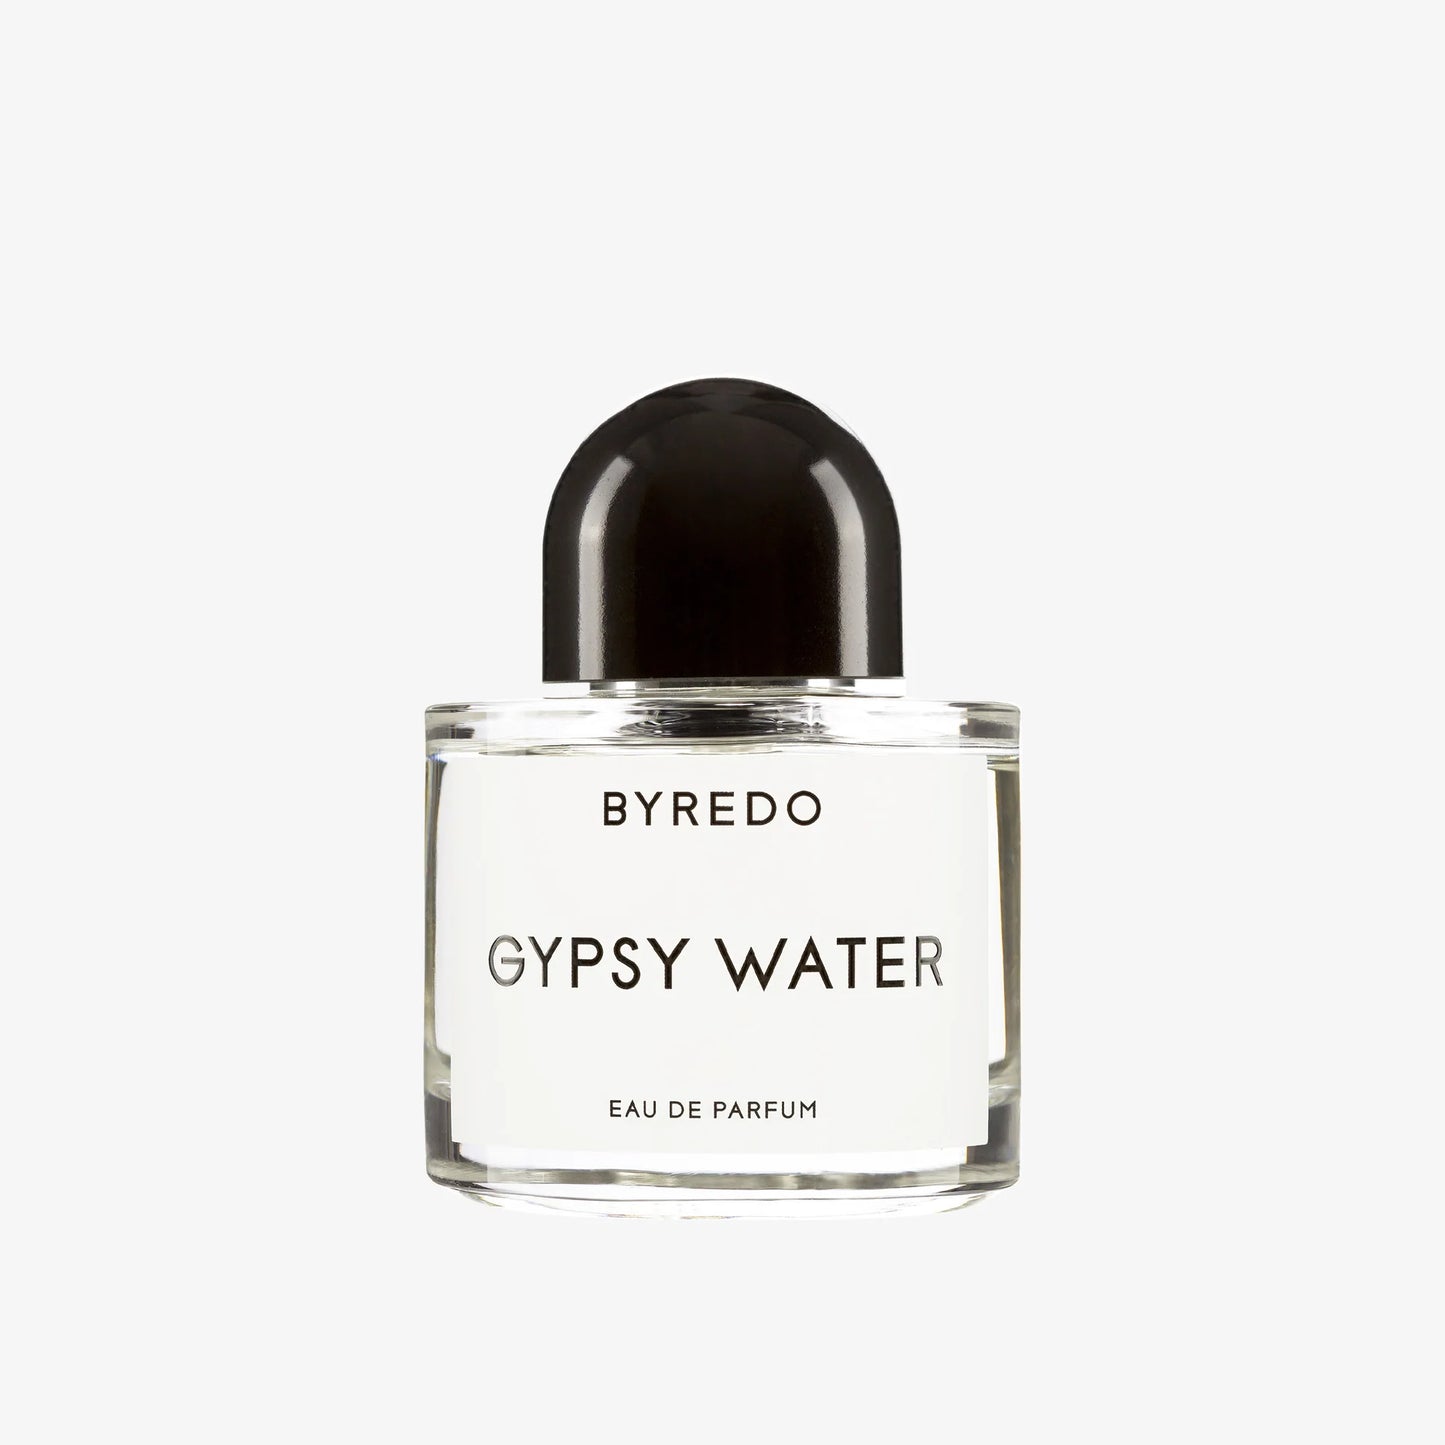 Durchsichtiges Parfüm Flakon von Byredo Gypsy Water mit schwarzem Deckel